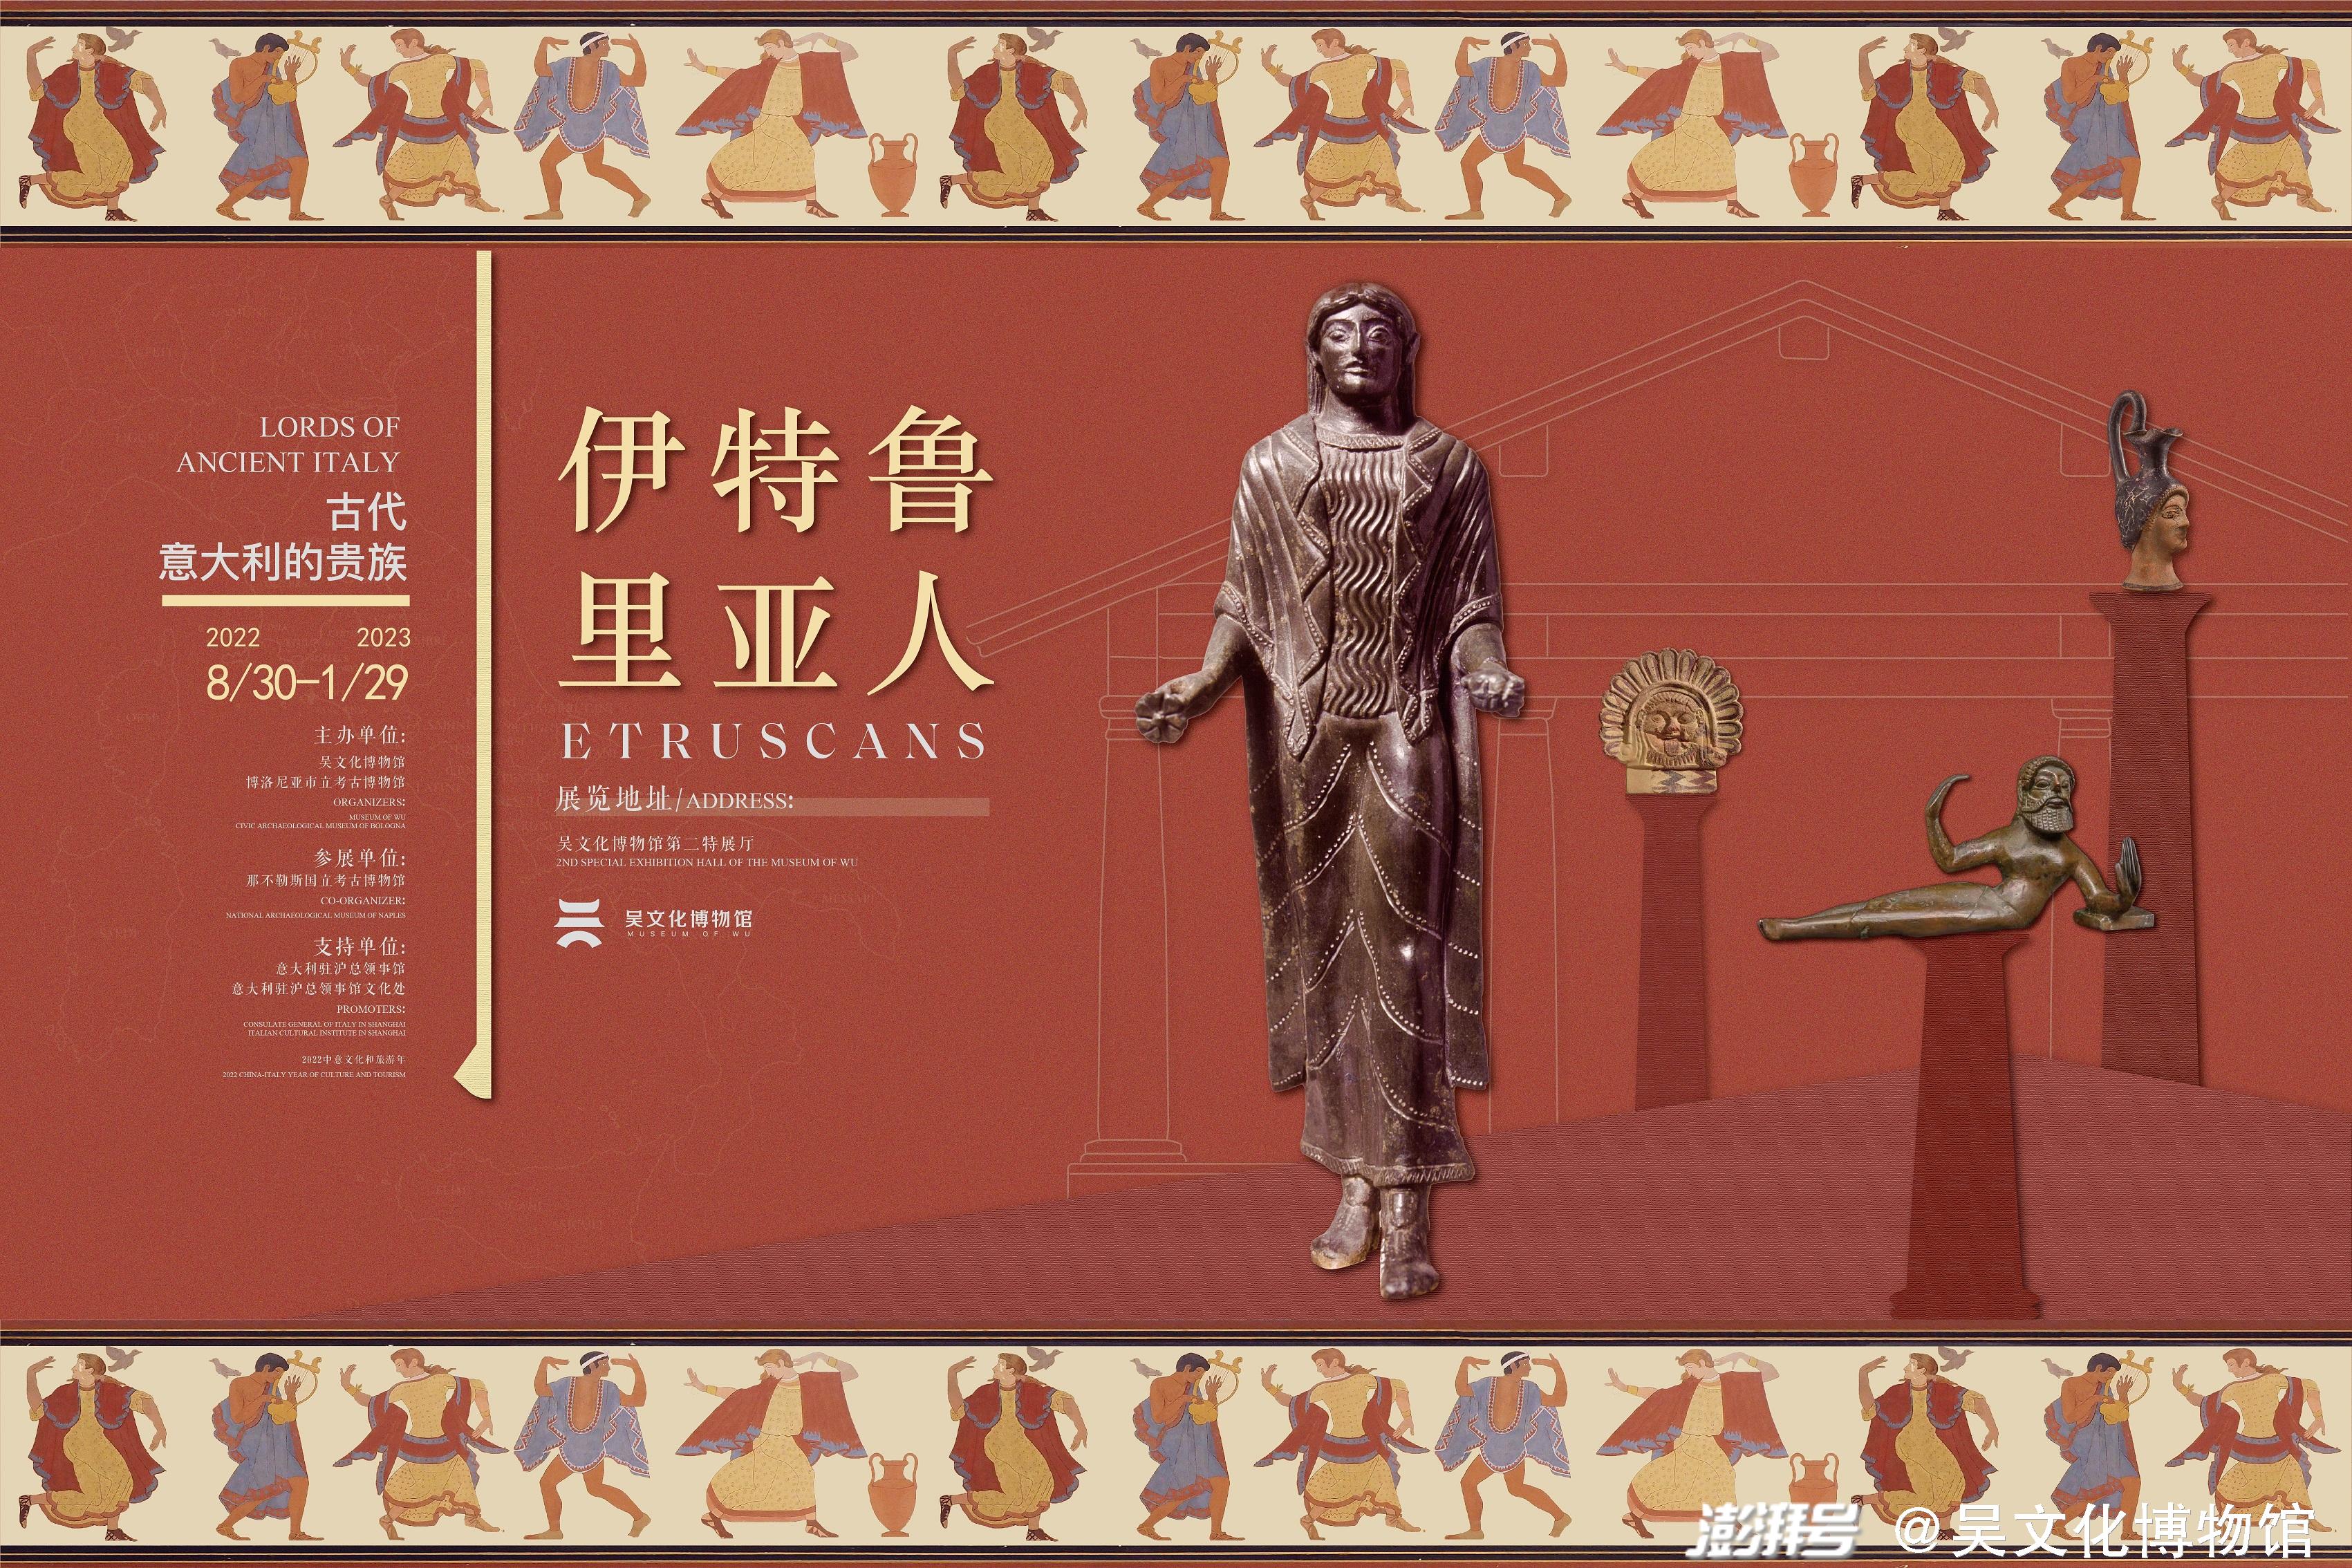 展讯丨吴文化博物馆举办“伊特鲁里亚人——古代意大利的贵族”展